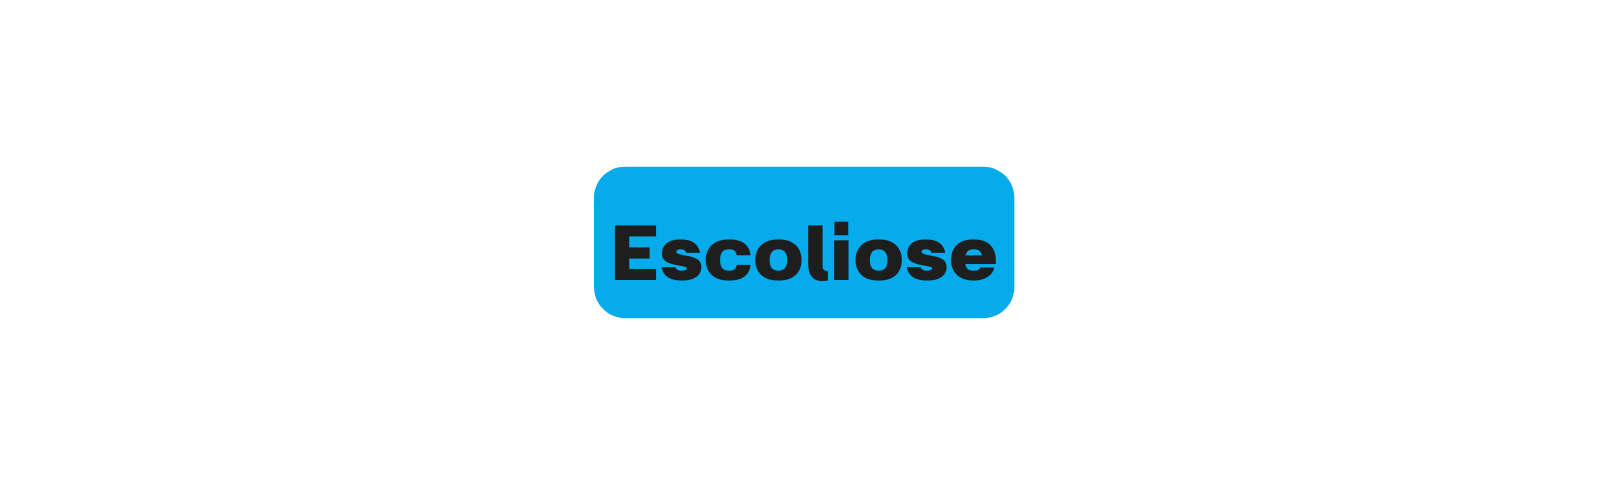 Escoliose